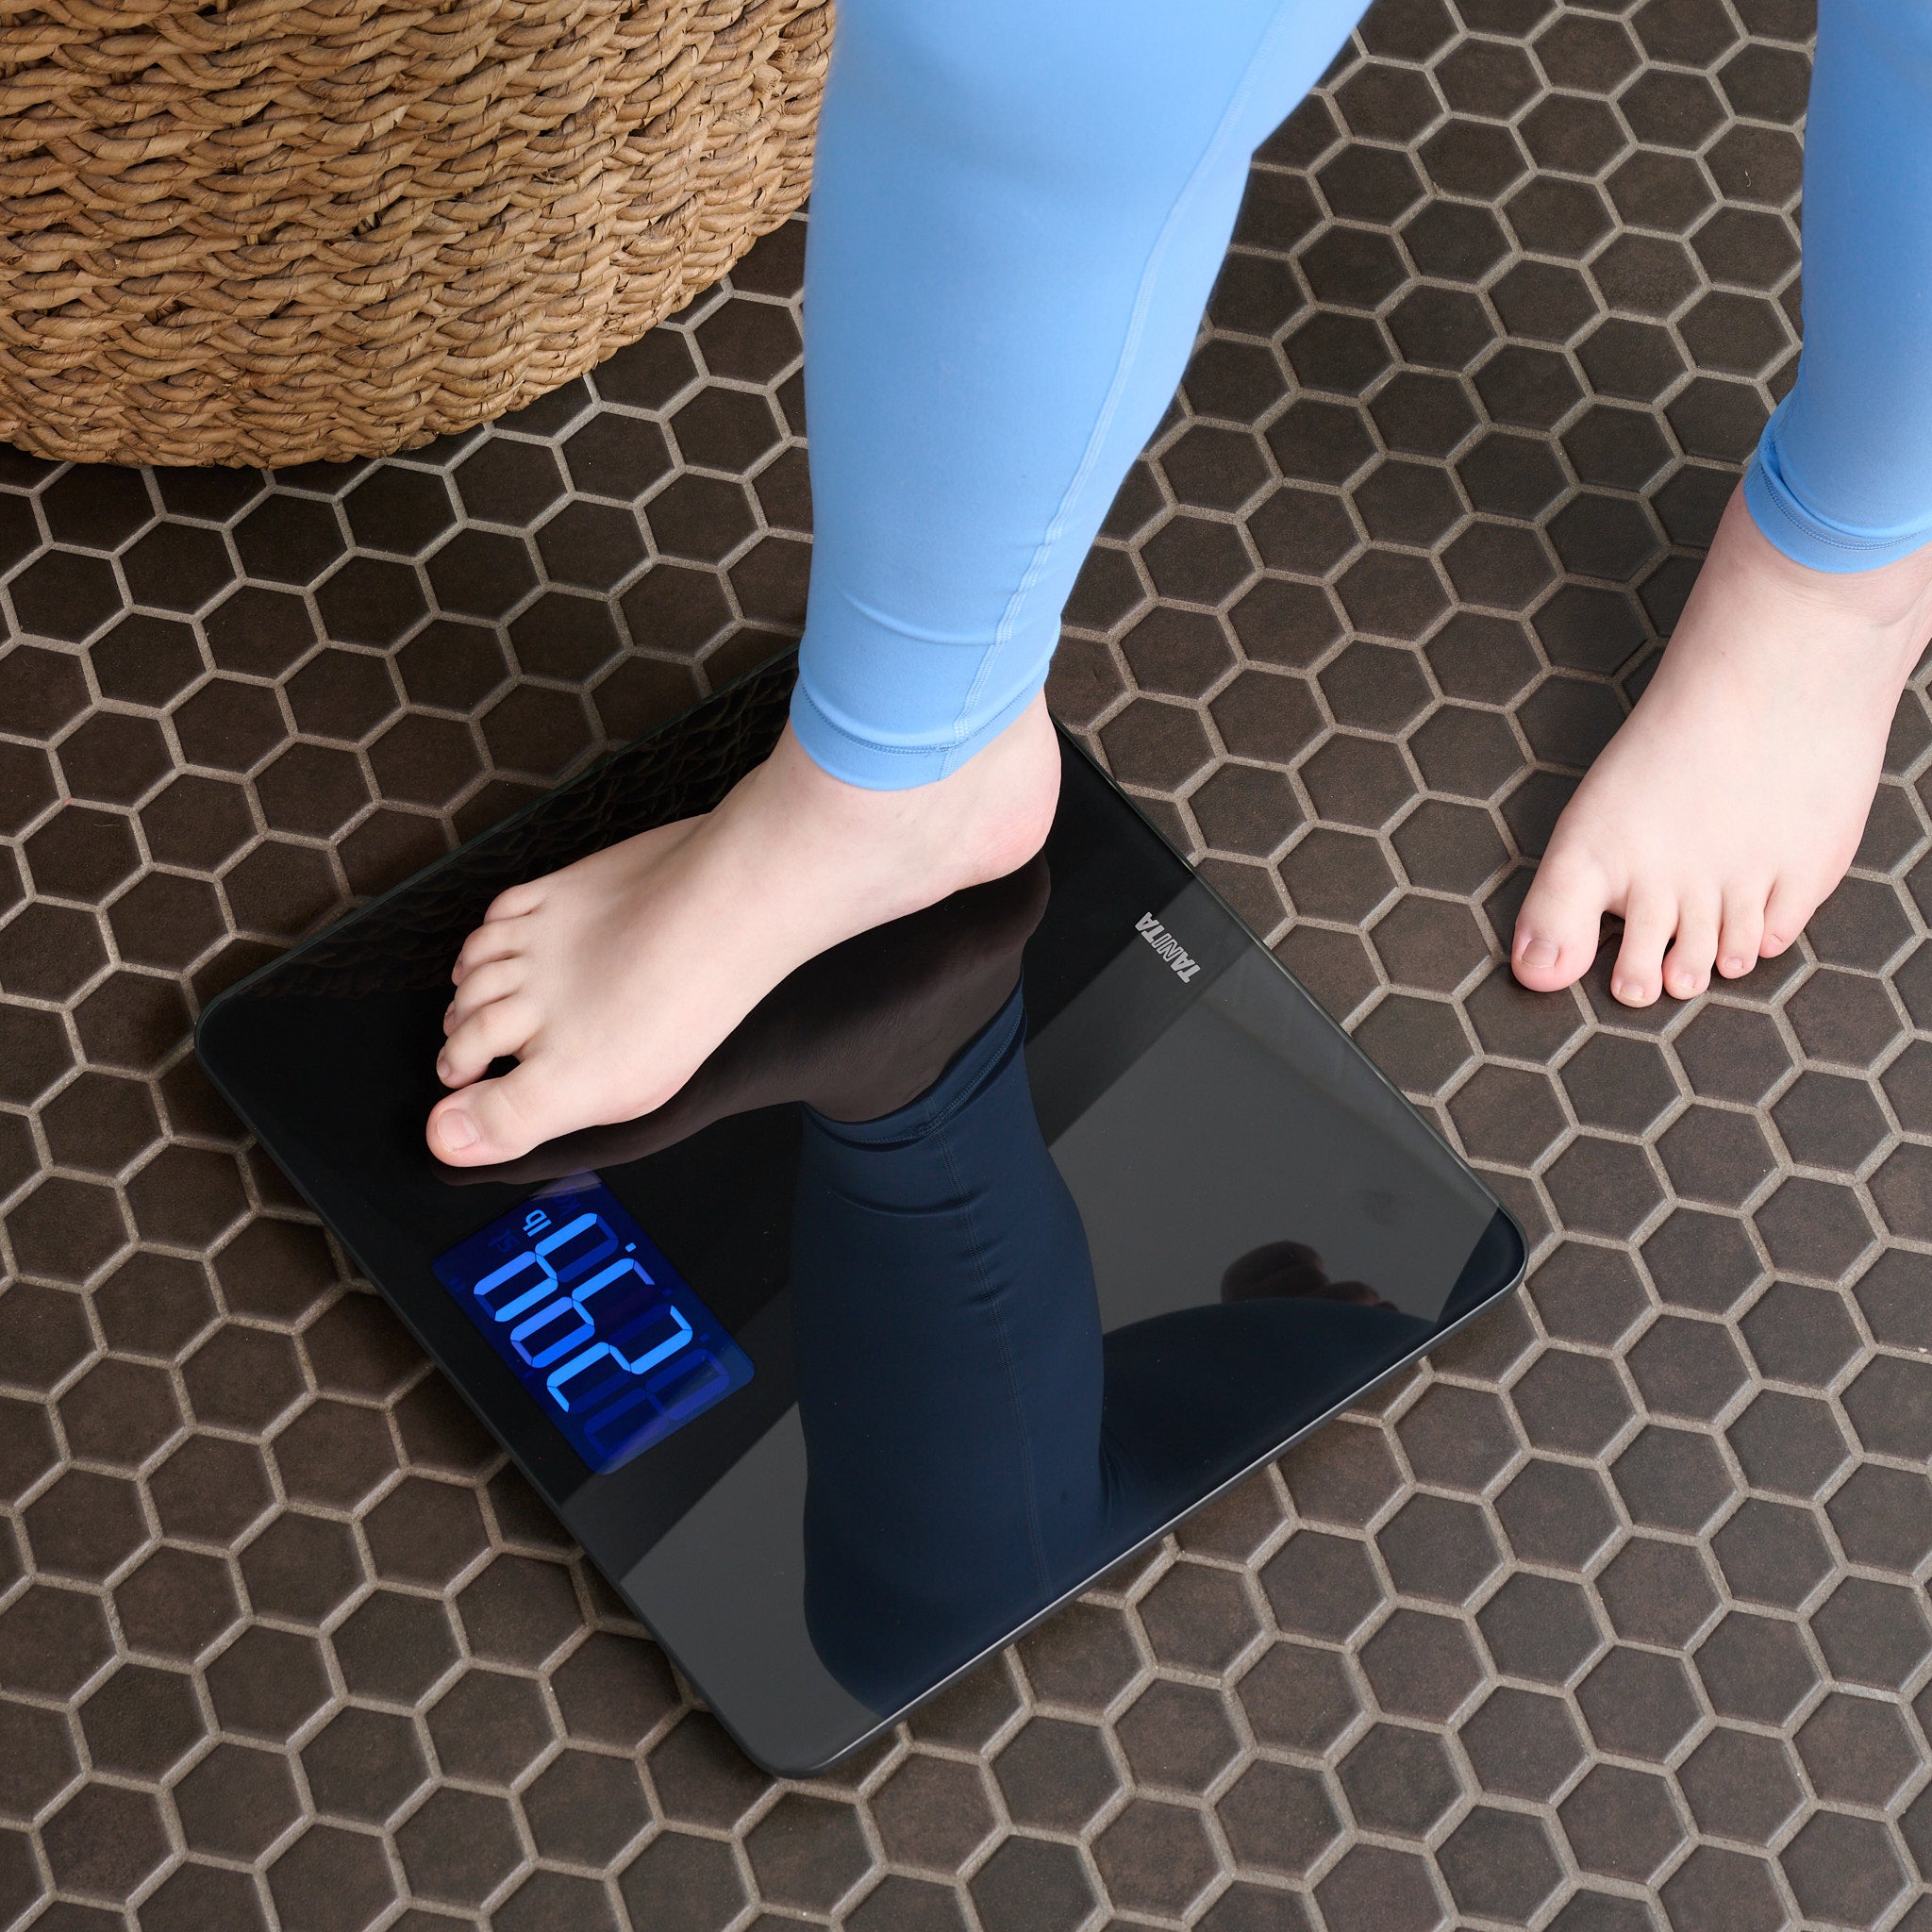 HD-366 Digital Weight Bathroom Scale